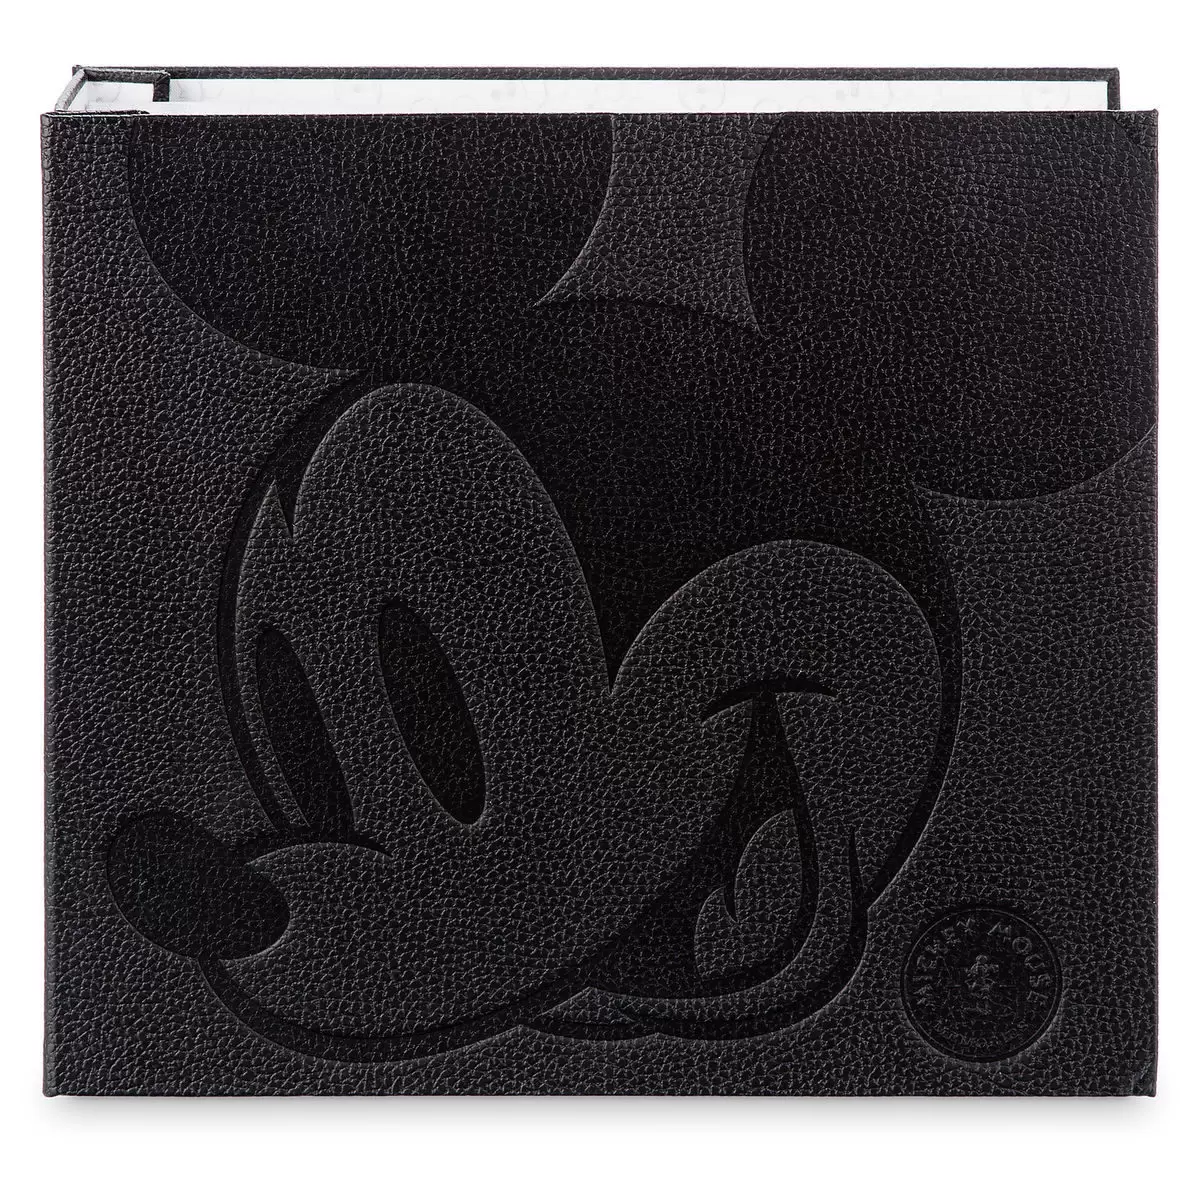 Souvenirs de Mickey - Mickey Mouse Memories - Pin\'s Mickey Memories Album